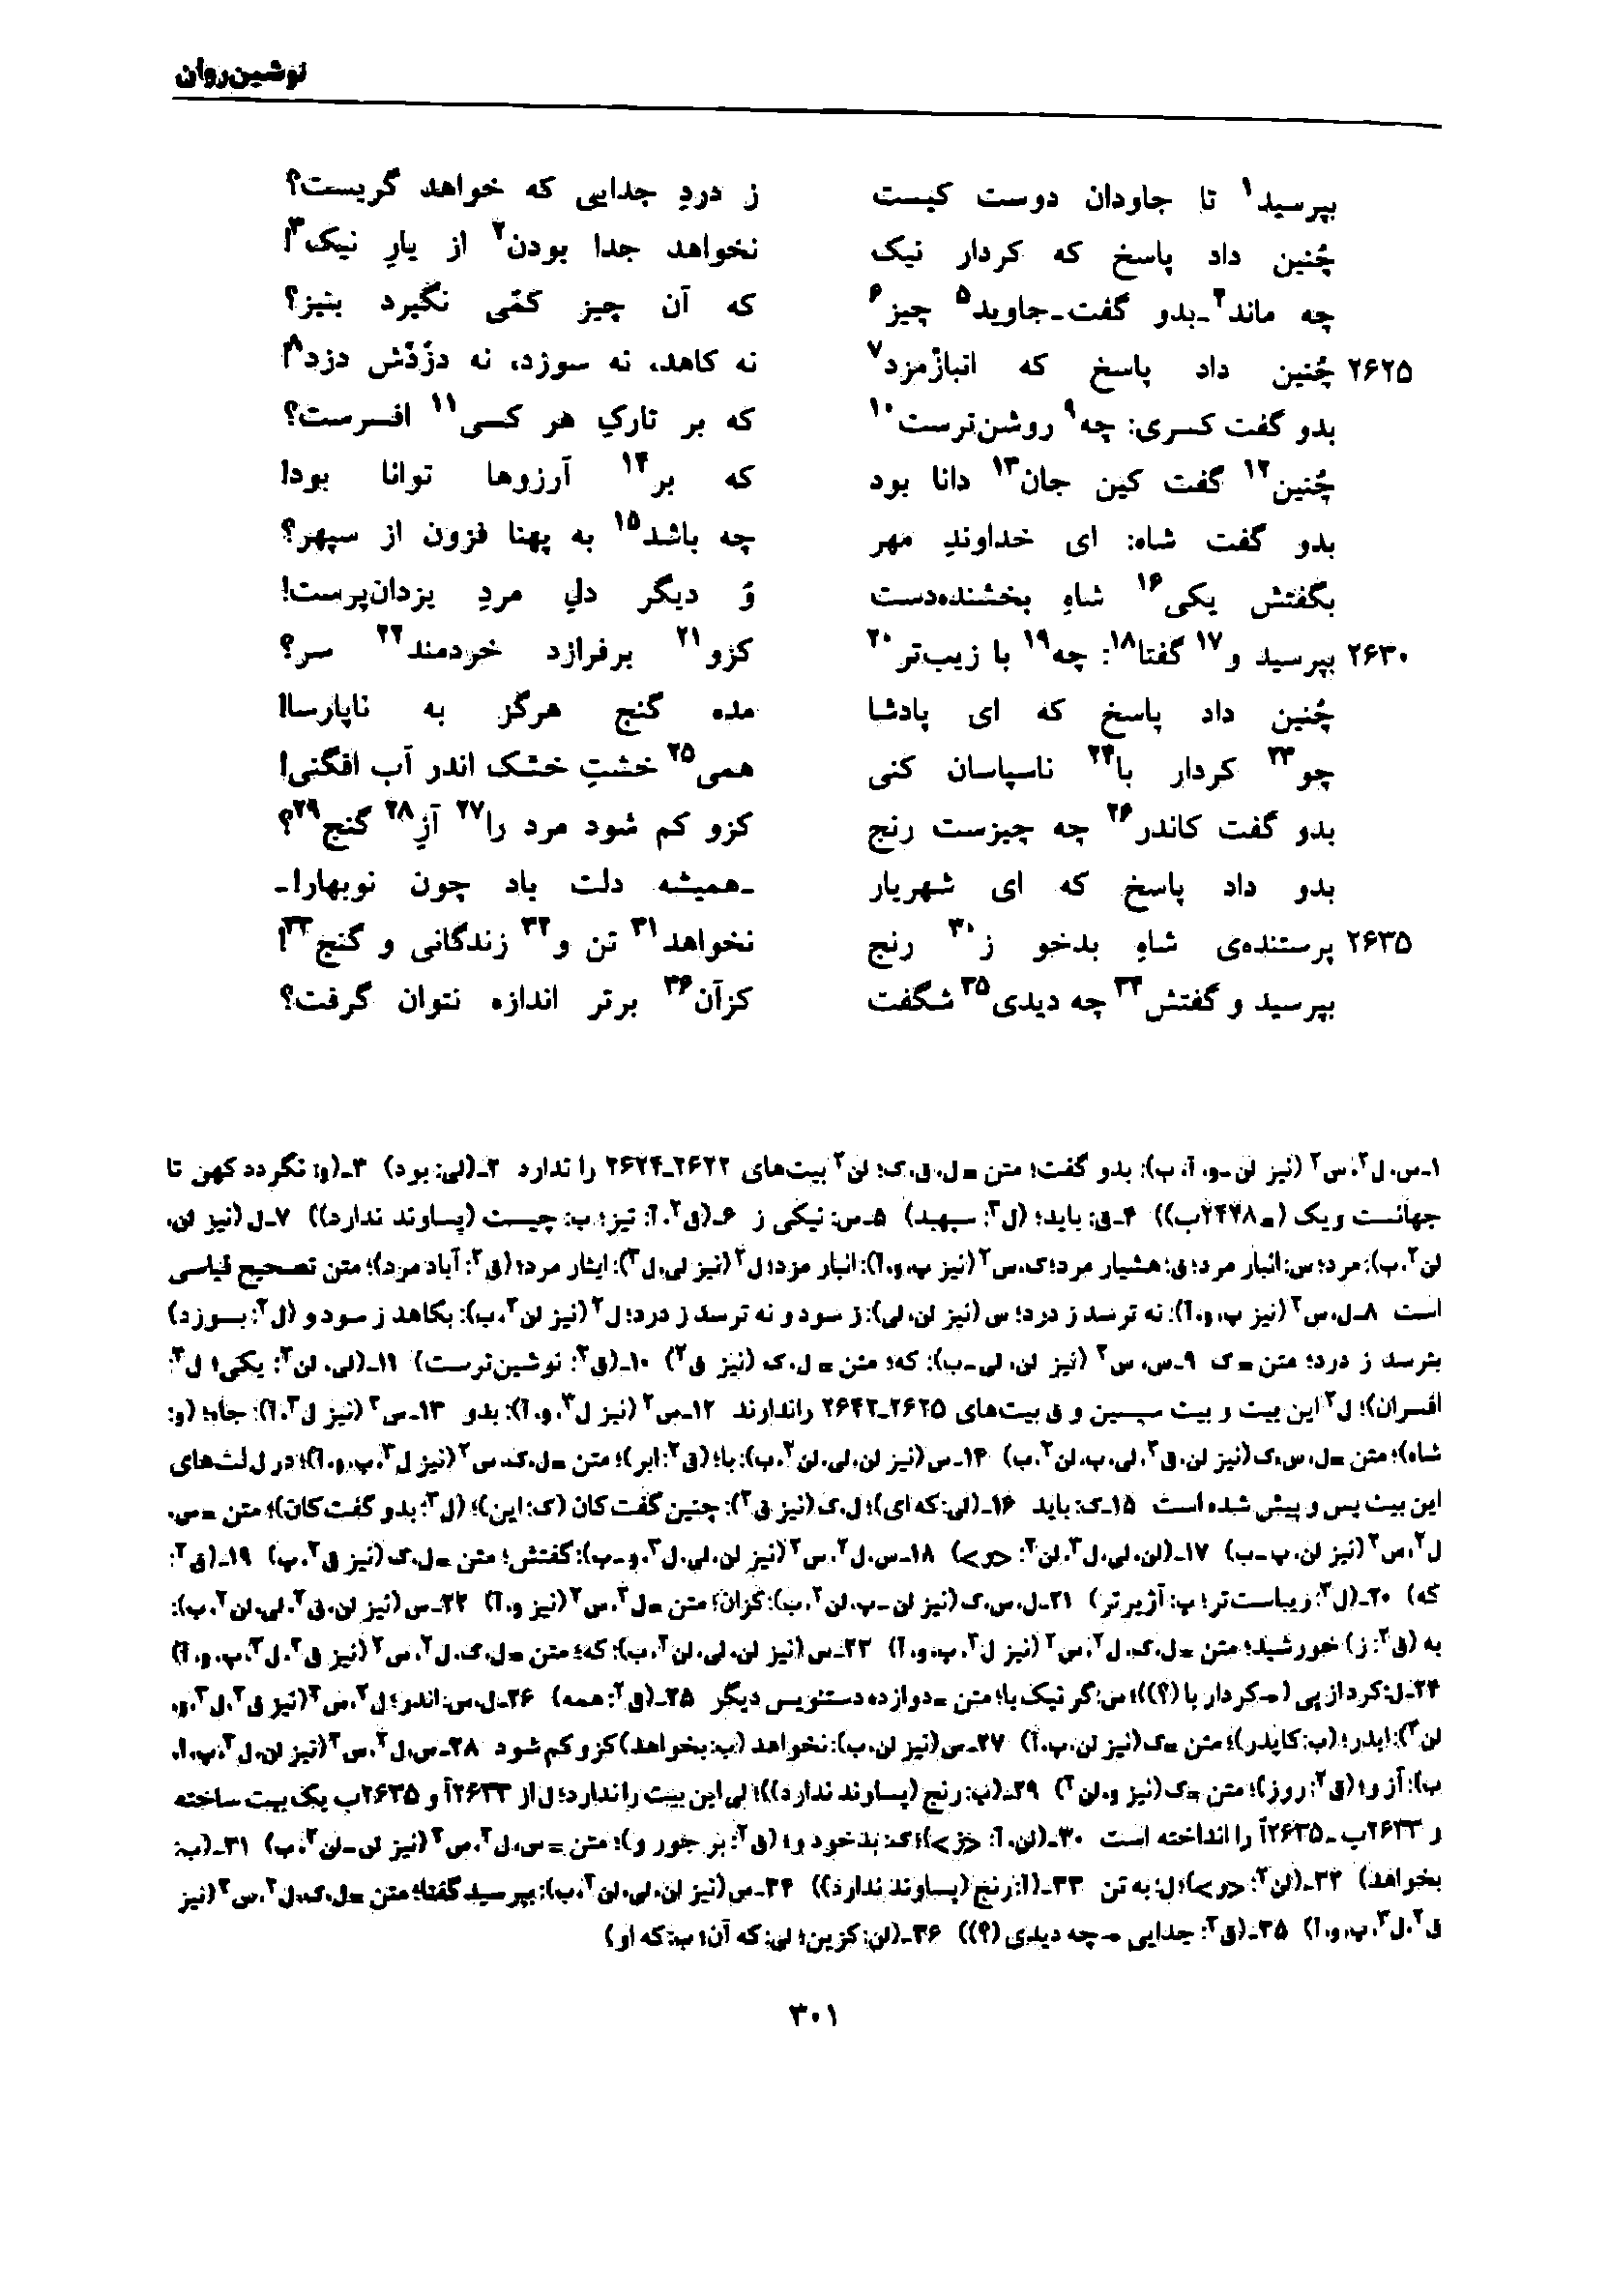 vol. 7, p. 301